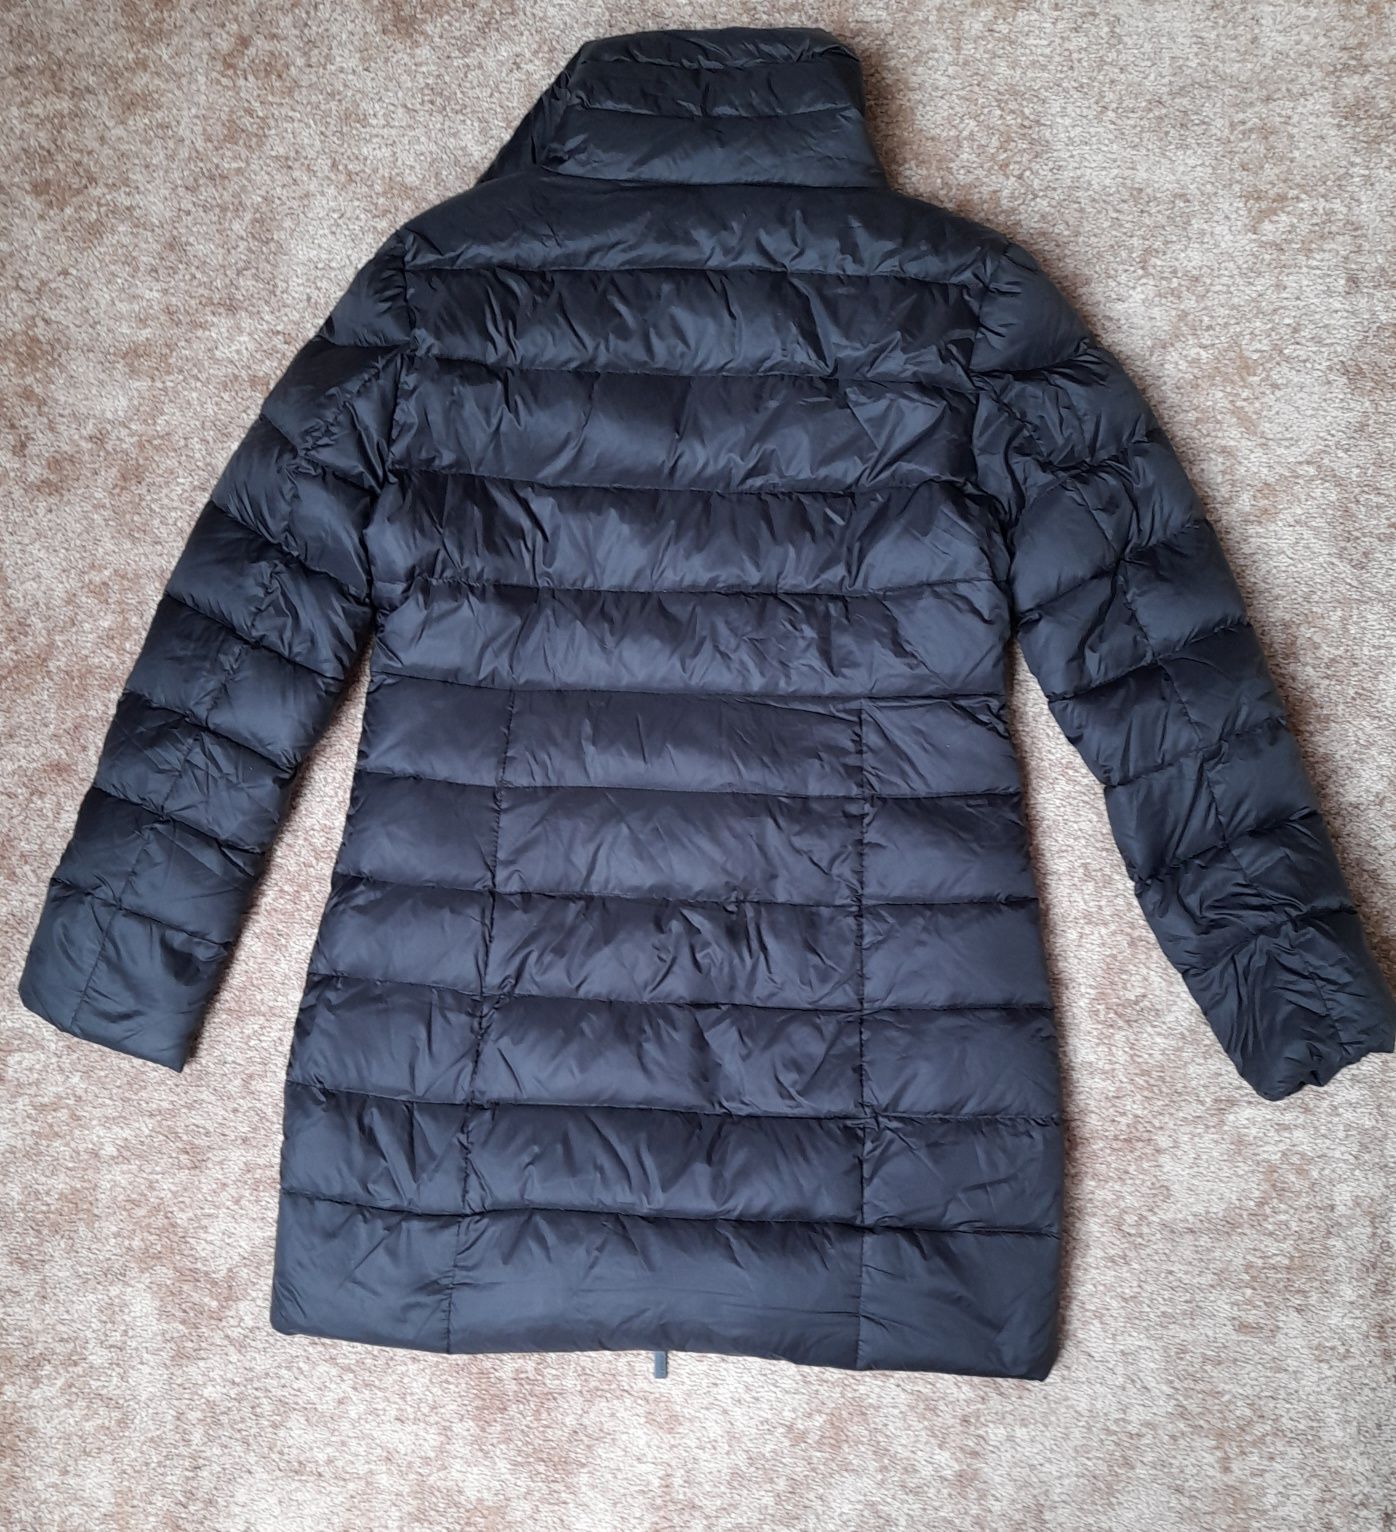 Diverse czarny XL płaszcz puchowy pikowany wysoka stójka